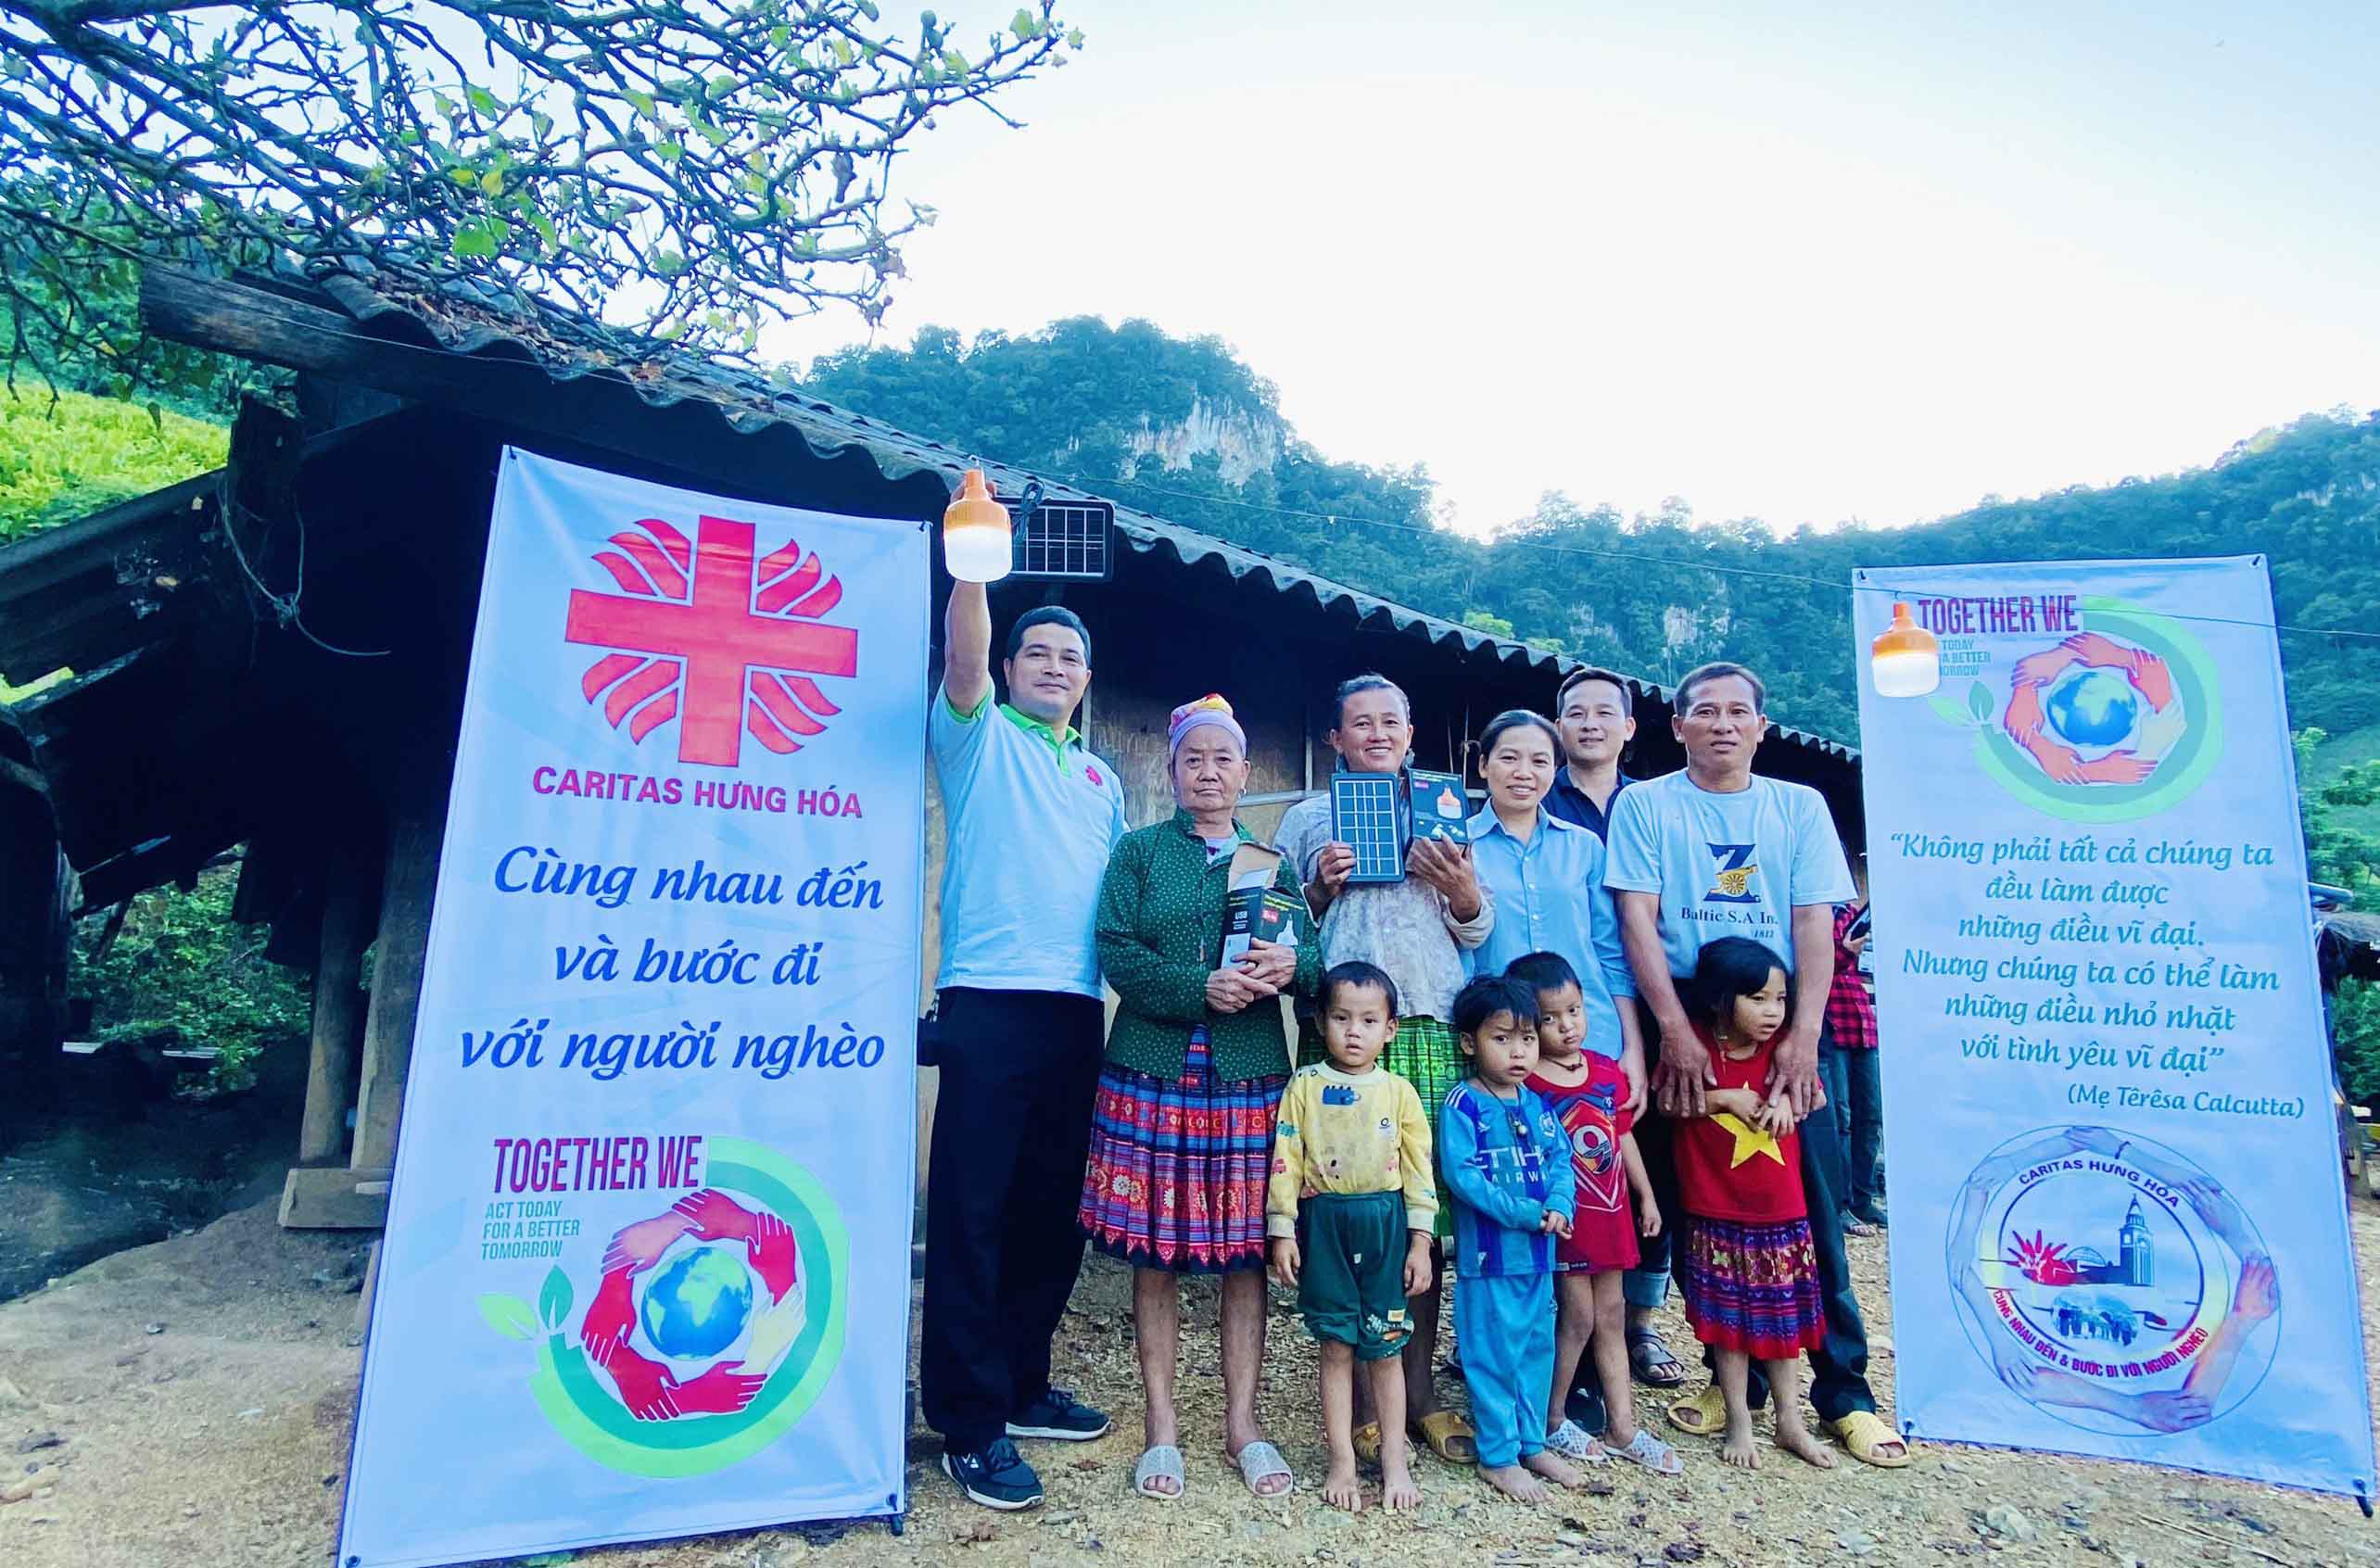 Caritas Hưng Hoá: Lắp đèn năng lượng mặt trời cho đồng bào H’mông tại bản Cò Lìu - tỉnh Sơn La